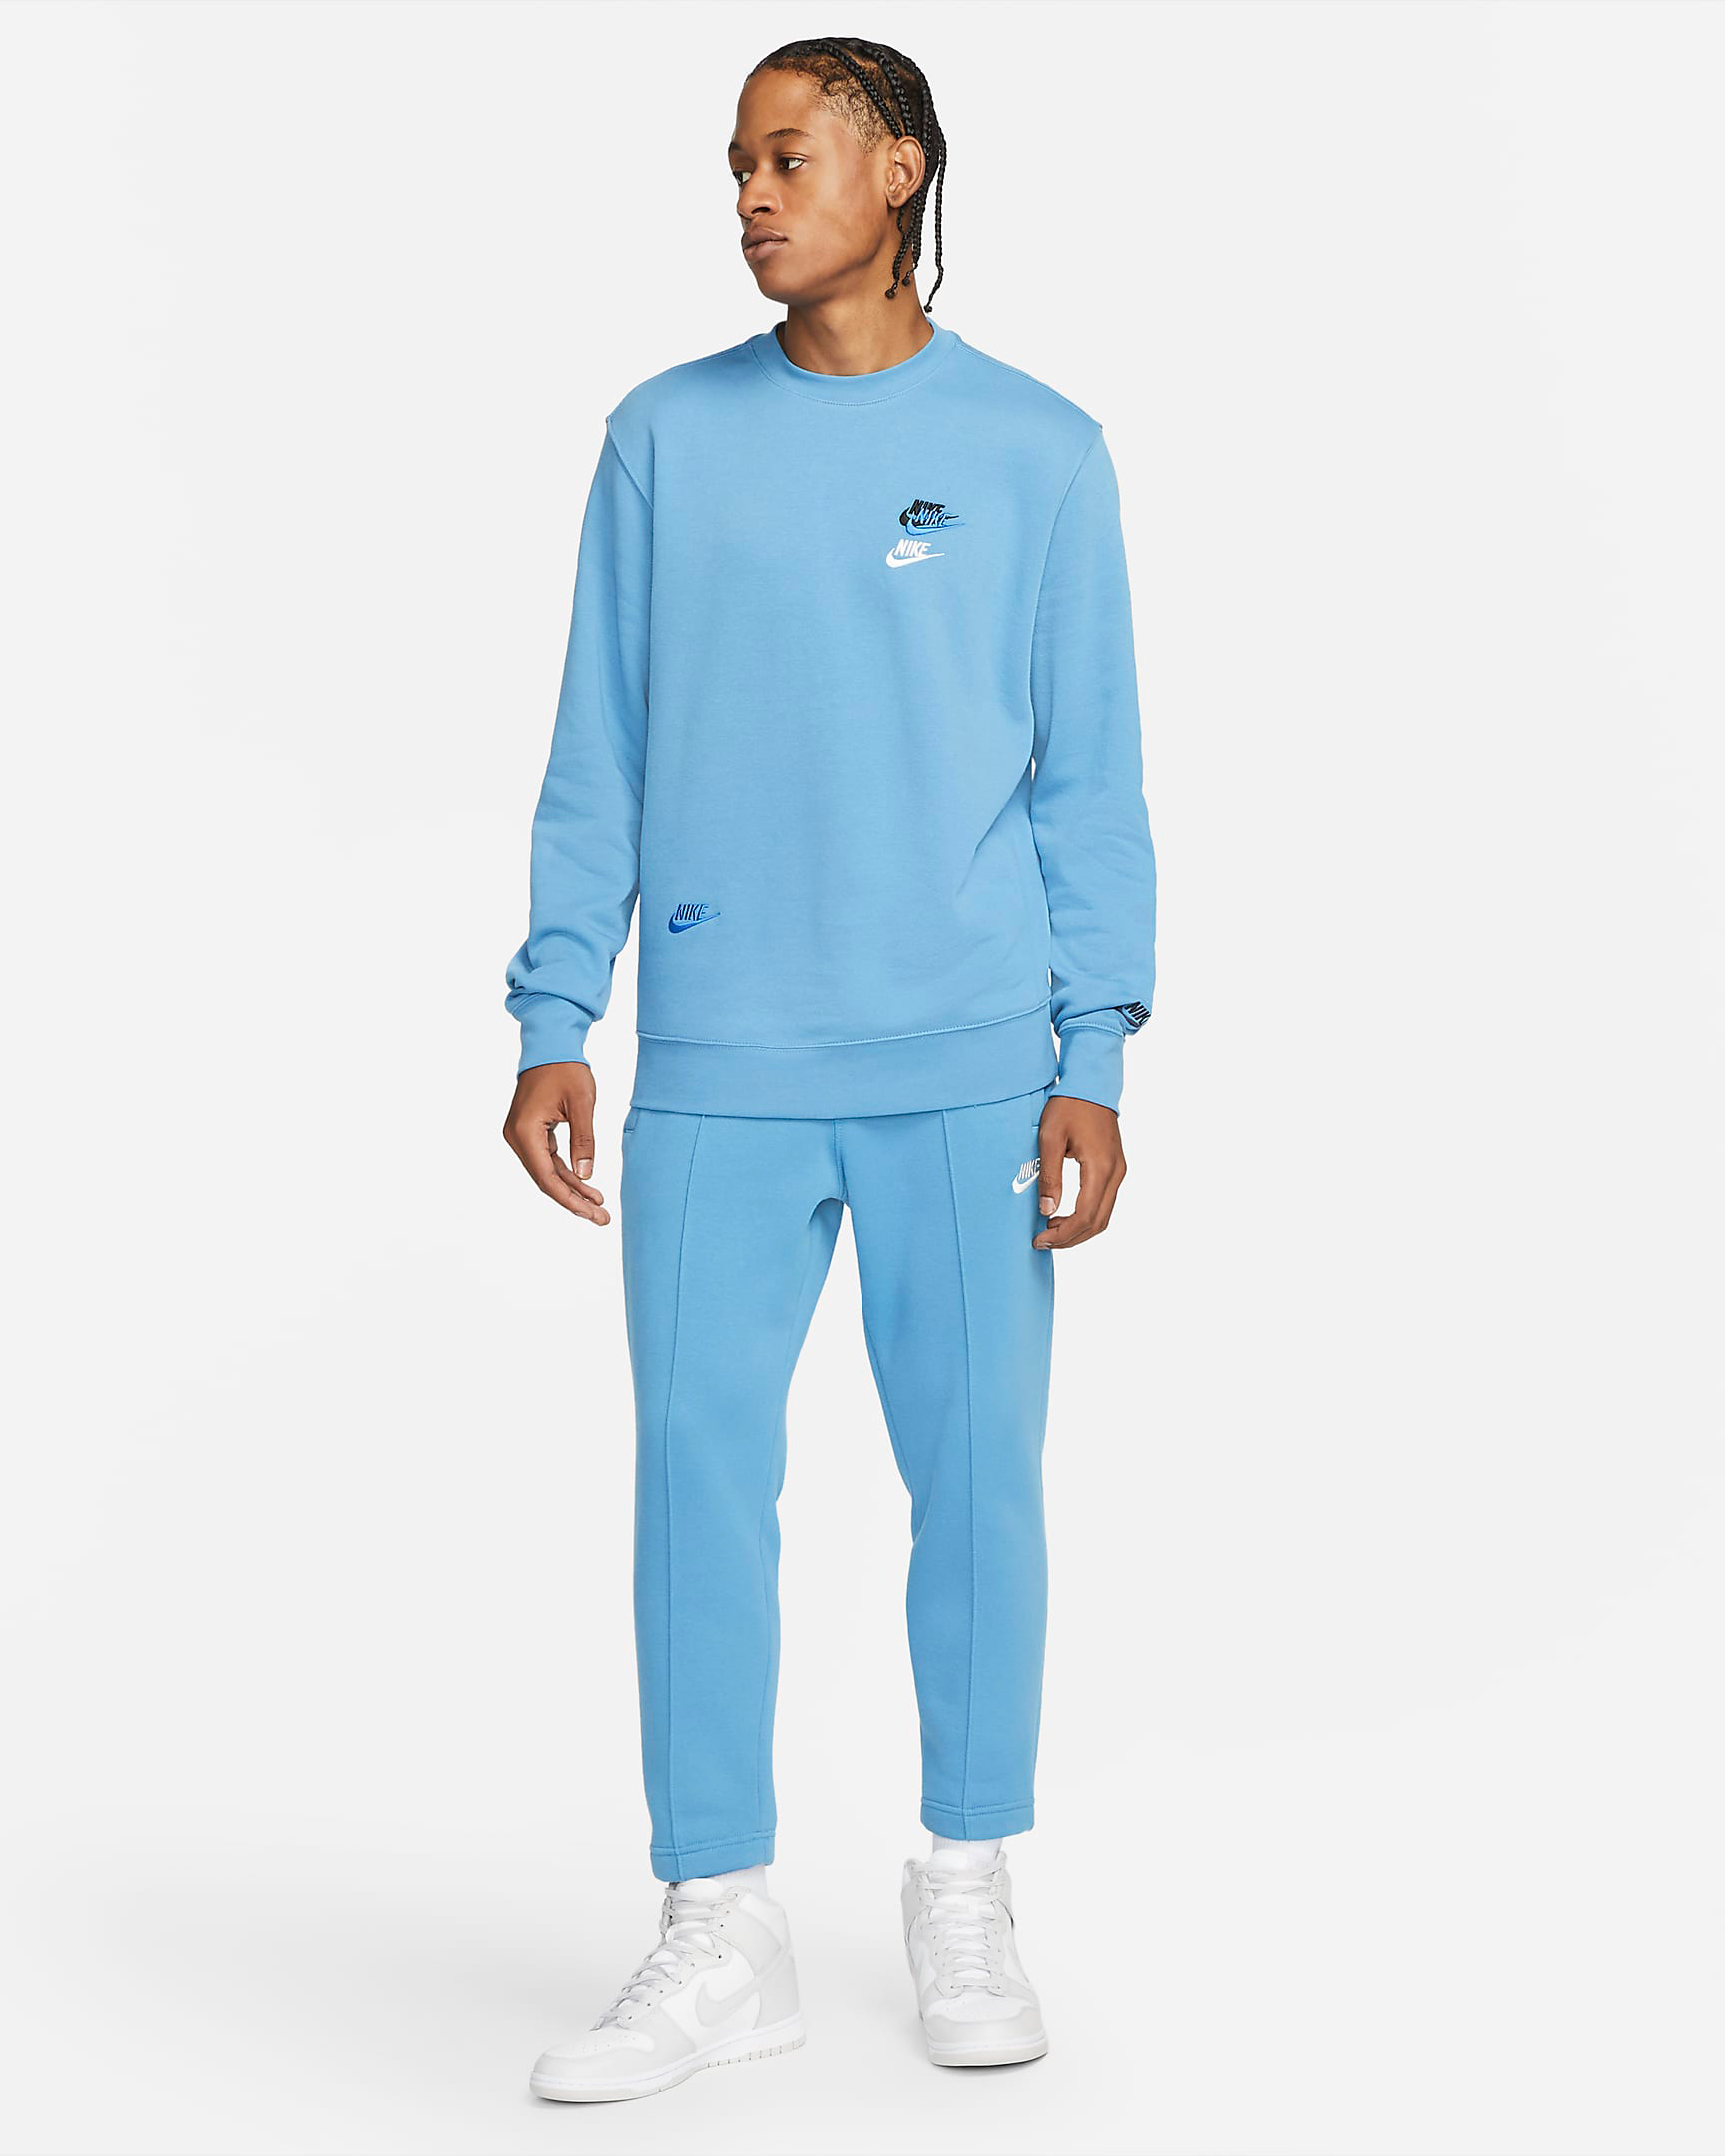 nike-sportswear-dutch-blue-clothing